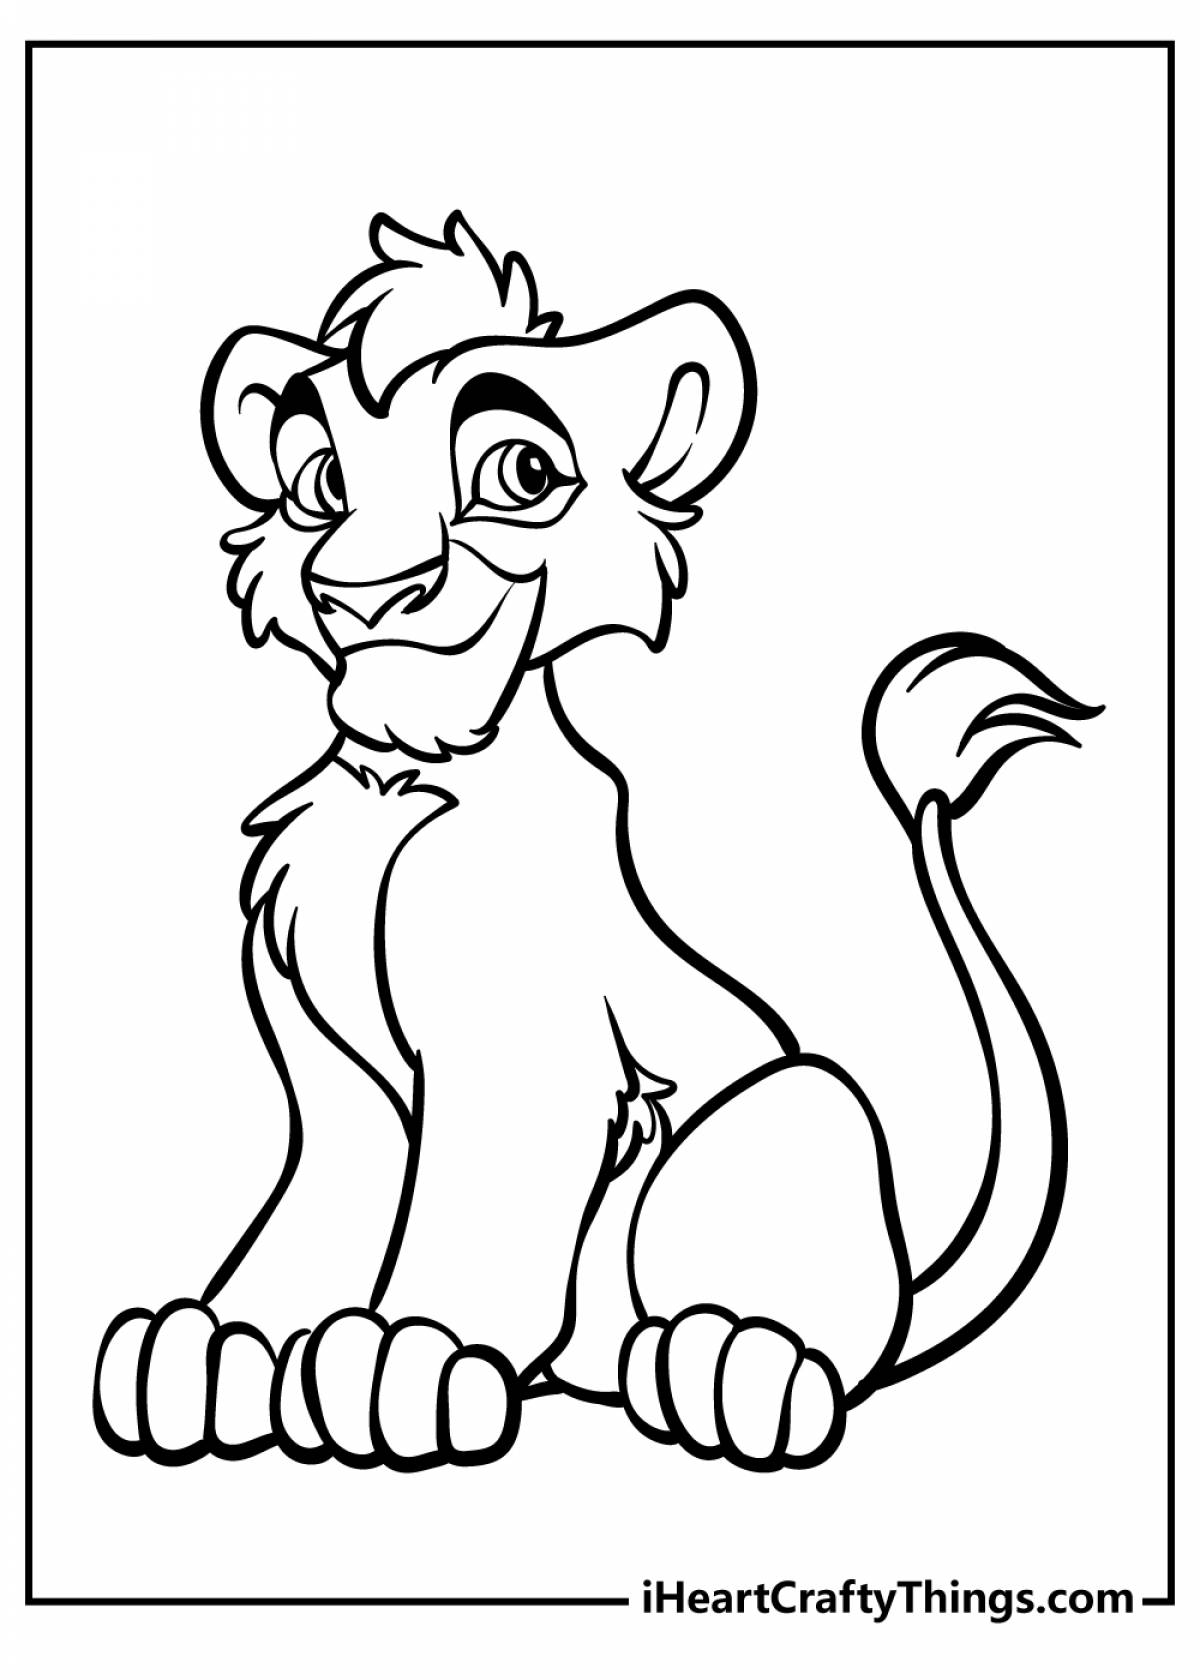 Анимированная страница раскраски льва для детей 3-4 лет